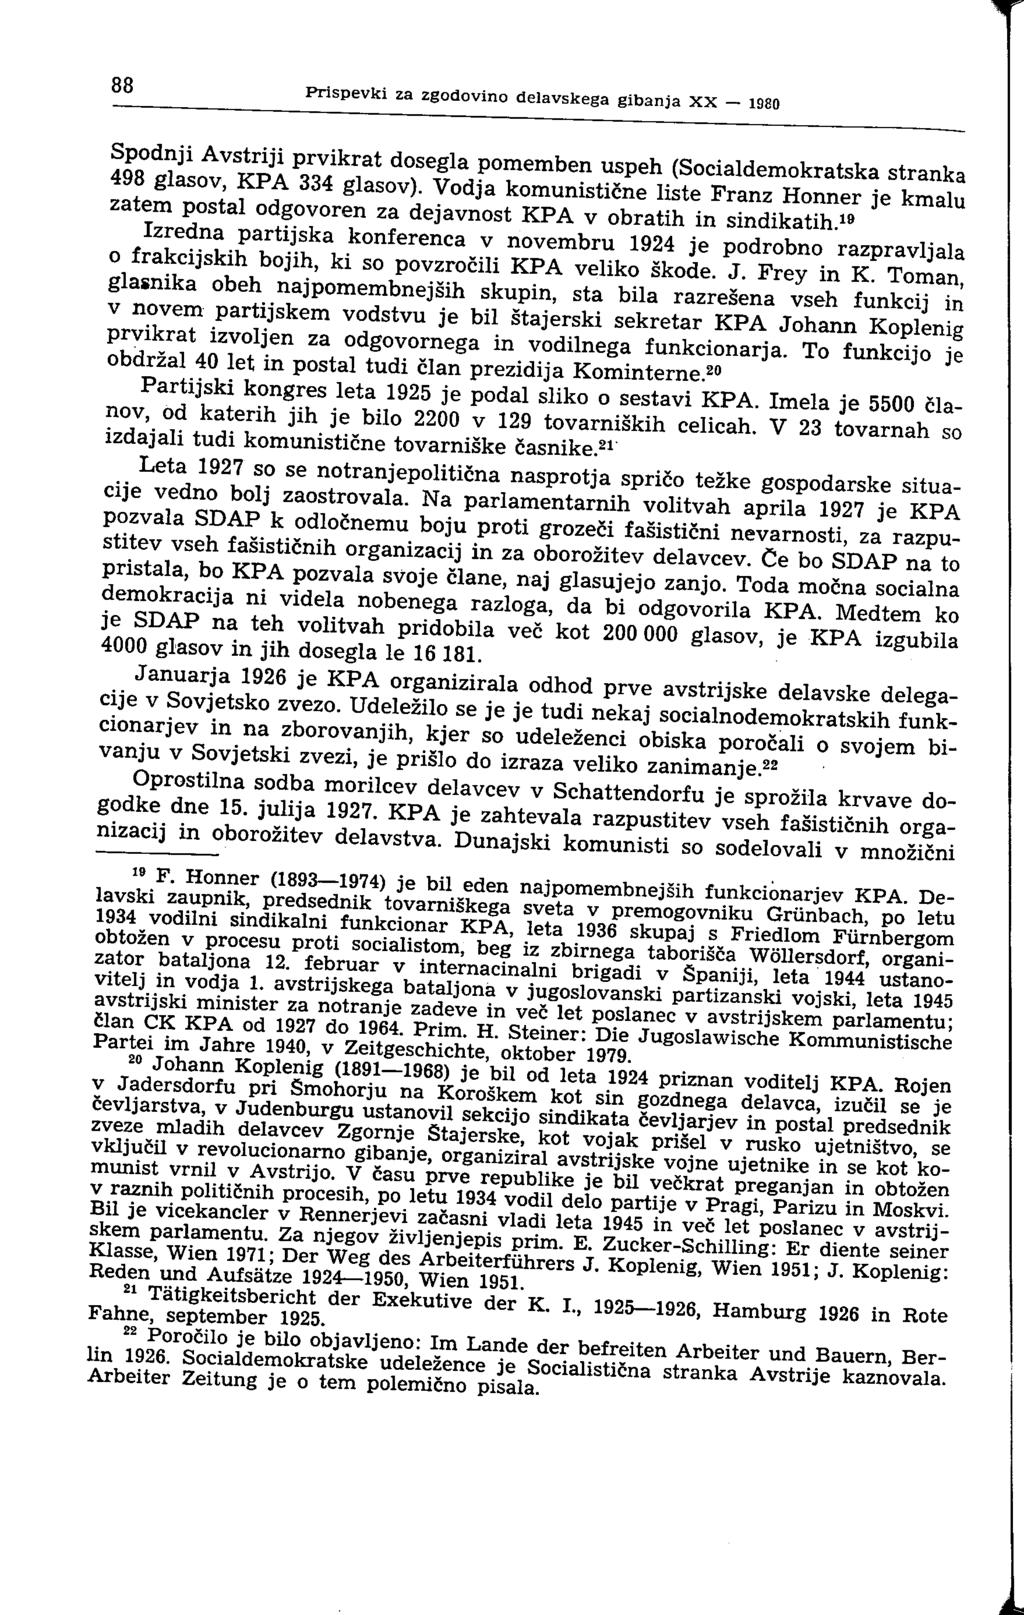 ^ Prispevki za zgodovino delavskega gibanja XX - 1980 d ^gll^kpis^if Se la, P T emben U S p e h (Socialdemokratska stranka *m glasov, KPA 334 glasov).